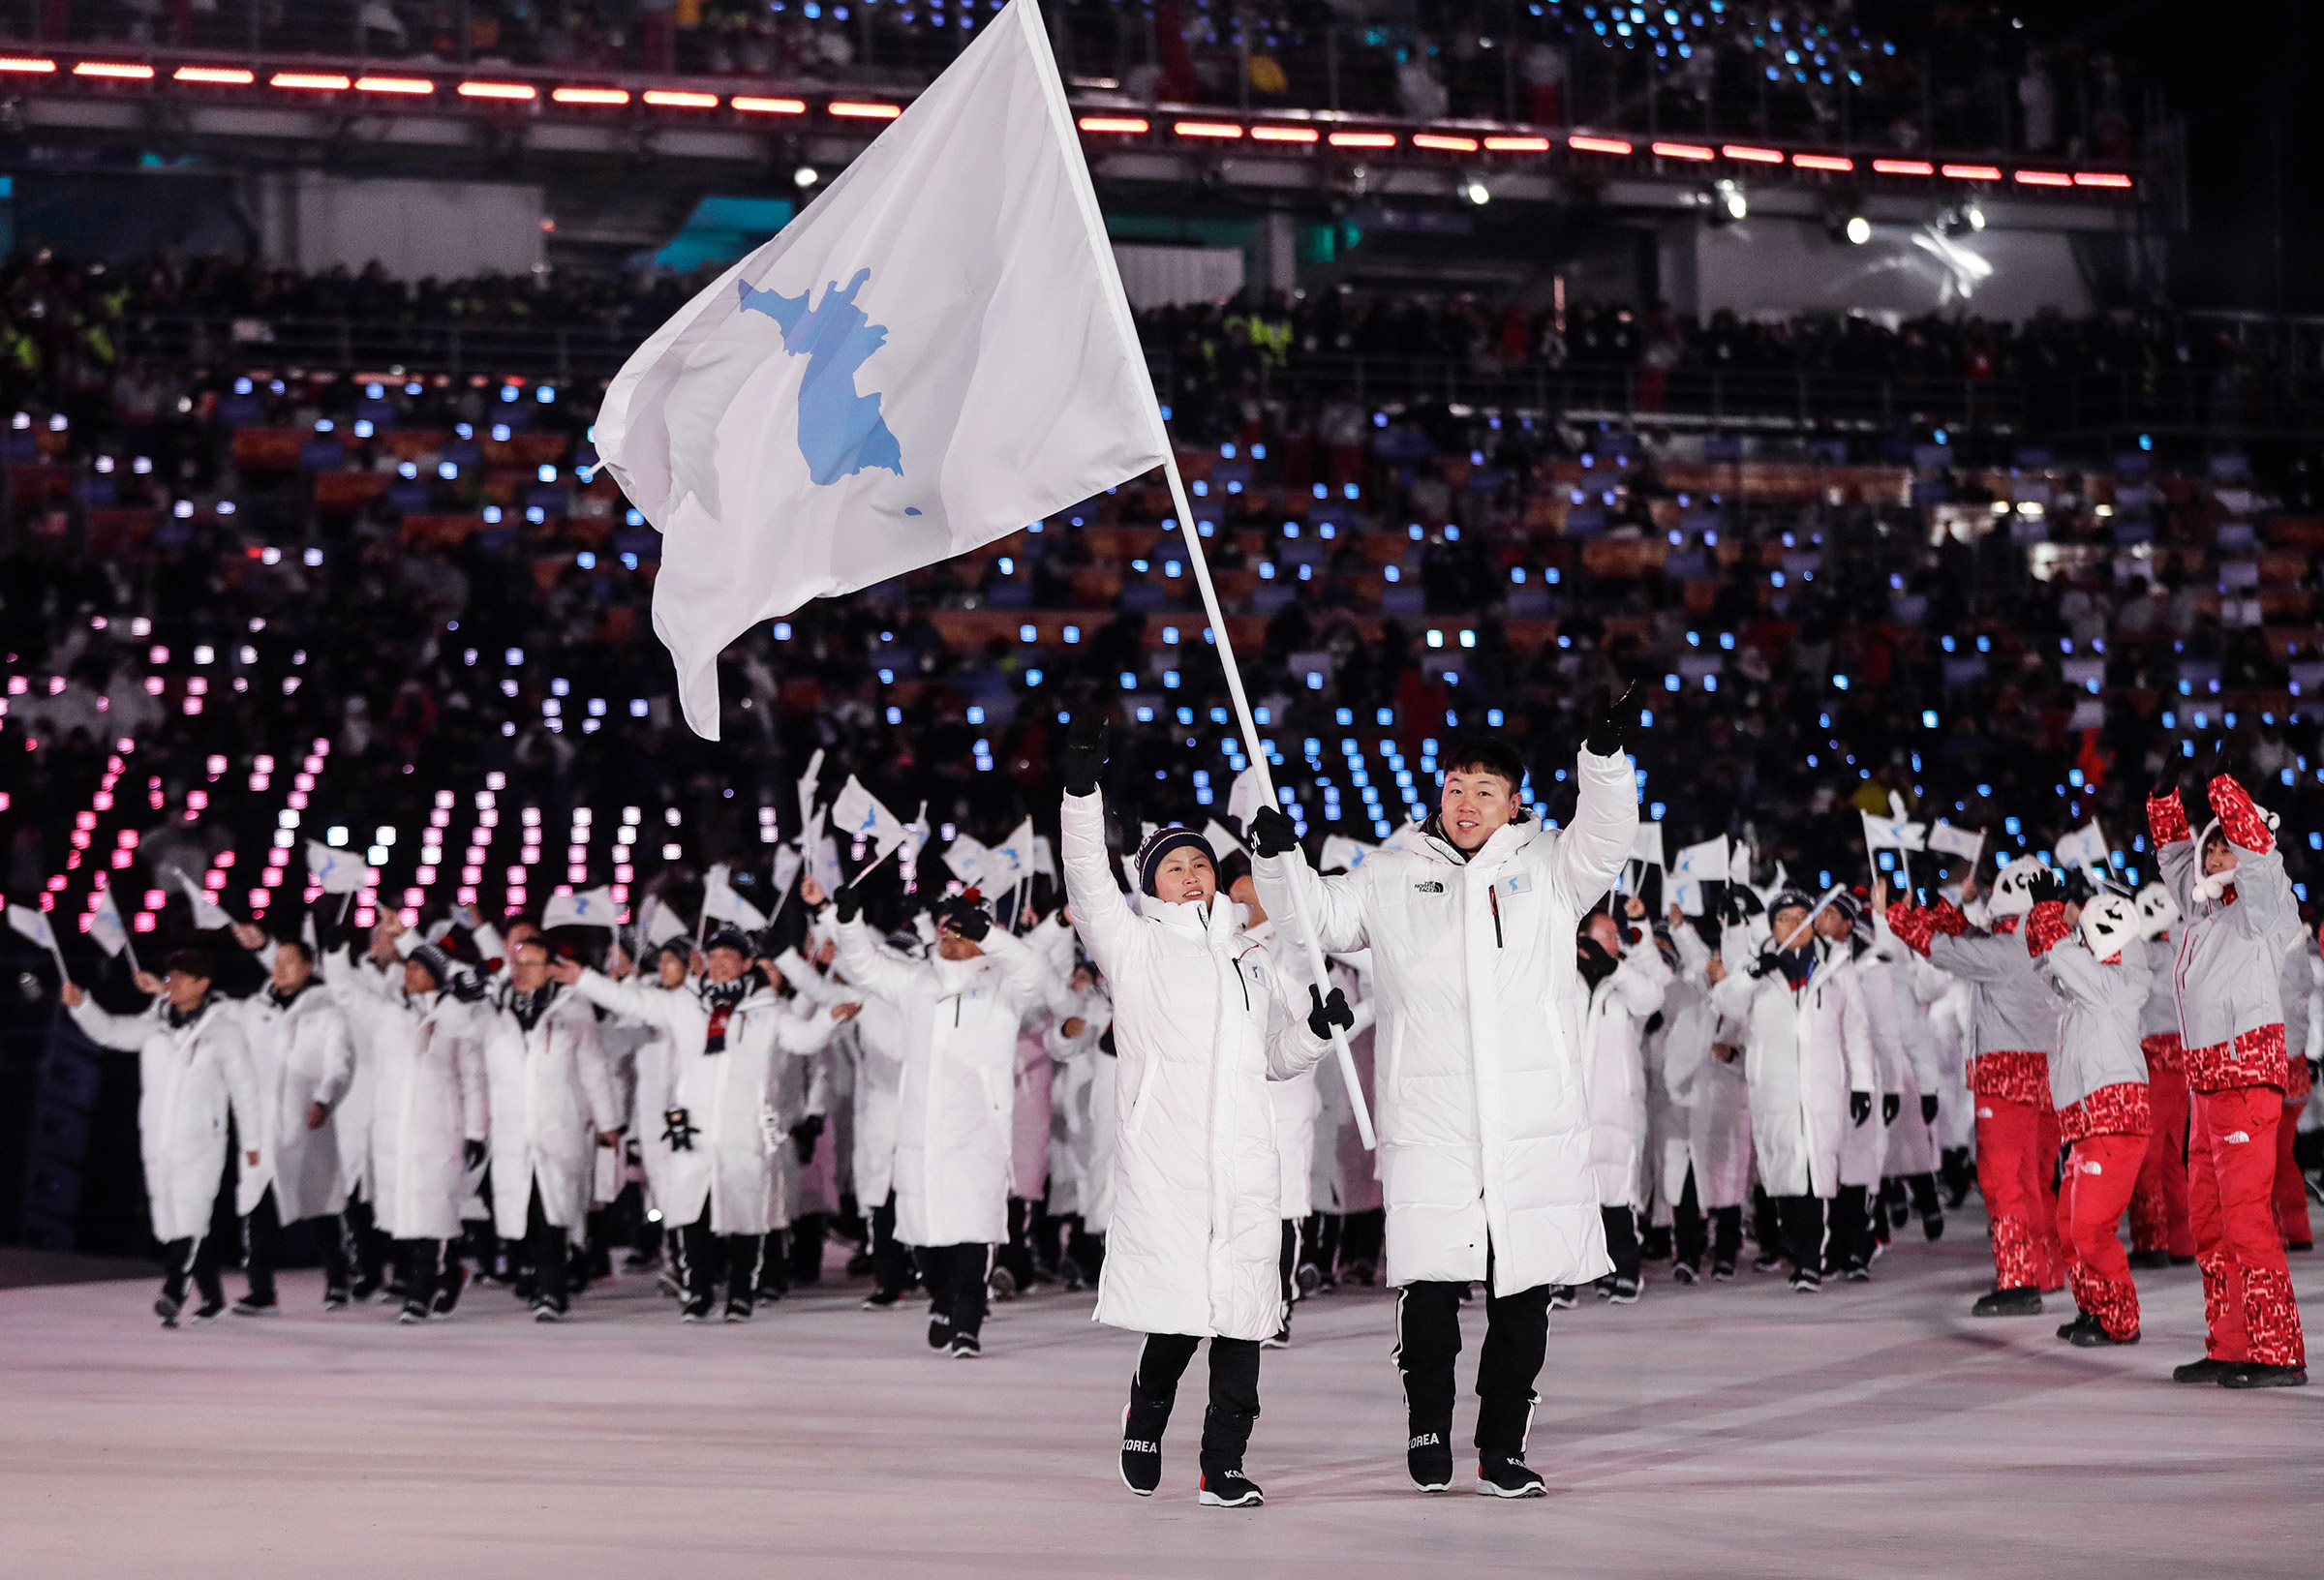 Закрыл парад традиционный выход страны &mdash; организатора Олимпийских игр. В этом году команды Южной и Северной Кореи решили пройти под единым флагом, на котором изображен Корейский полуостров.

&laquo;Мы благодарим команды Кореи и КНДР. Все находящиеся здесь атлеты и поклонники спорта, мы все очень тронуты тем жестом, который они продемонстрировали. Объединенные нашим разнообразием, мы сильнее всех сил, способных нас разъединить&raquo;, &mdash; заявил президент Международного олимпийского комитета Томас Бах
